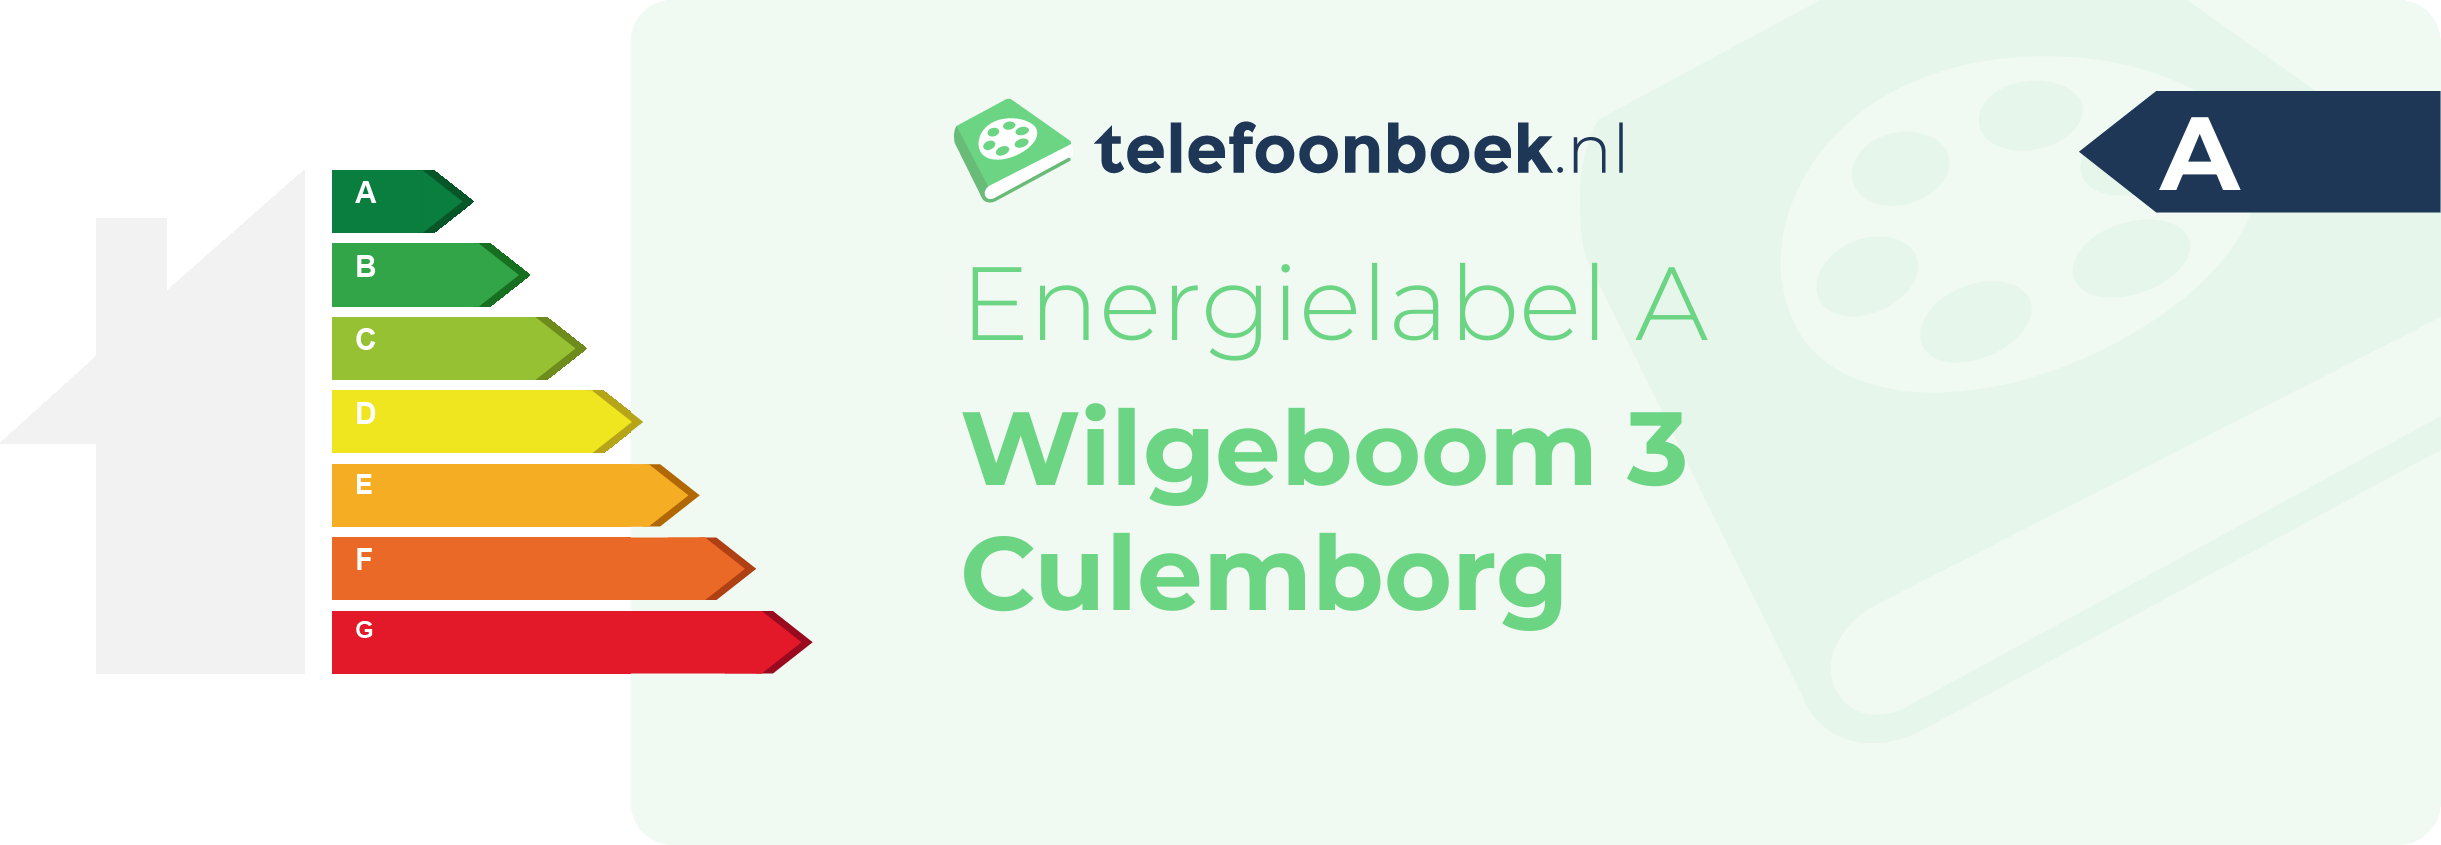 Energielabel Wilgeboom 3 Culemborg